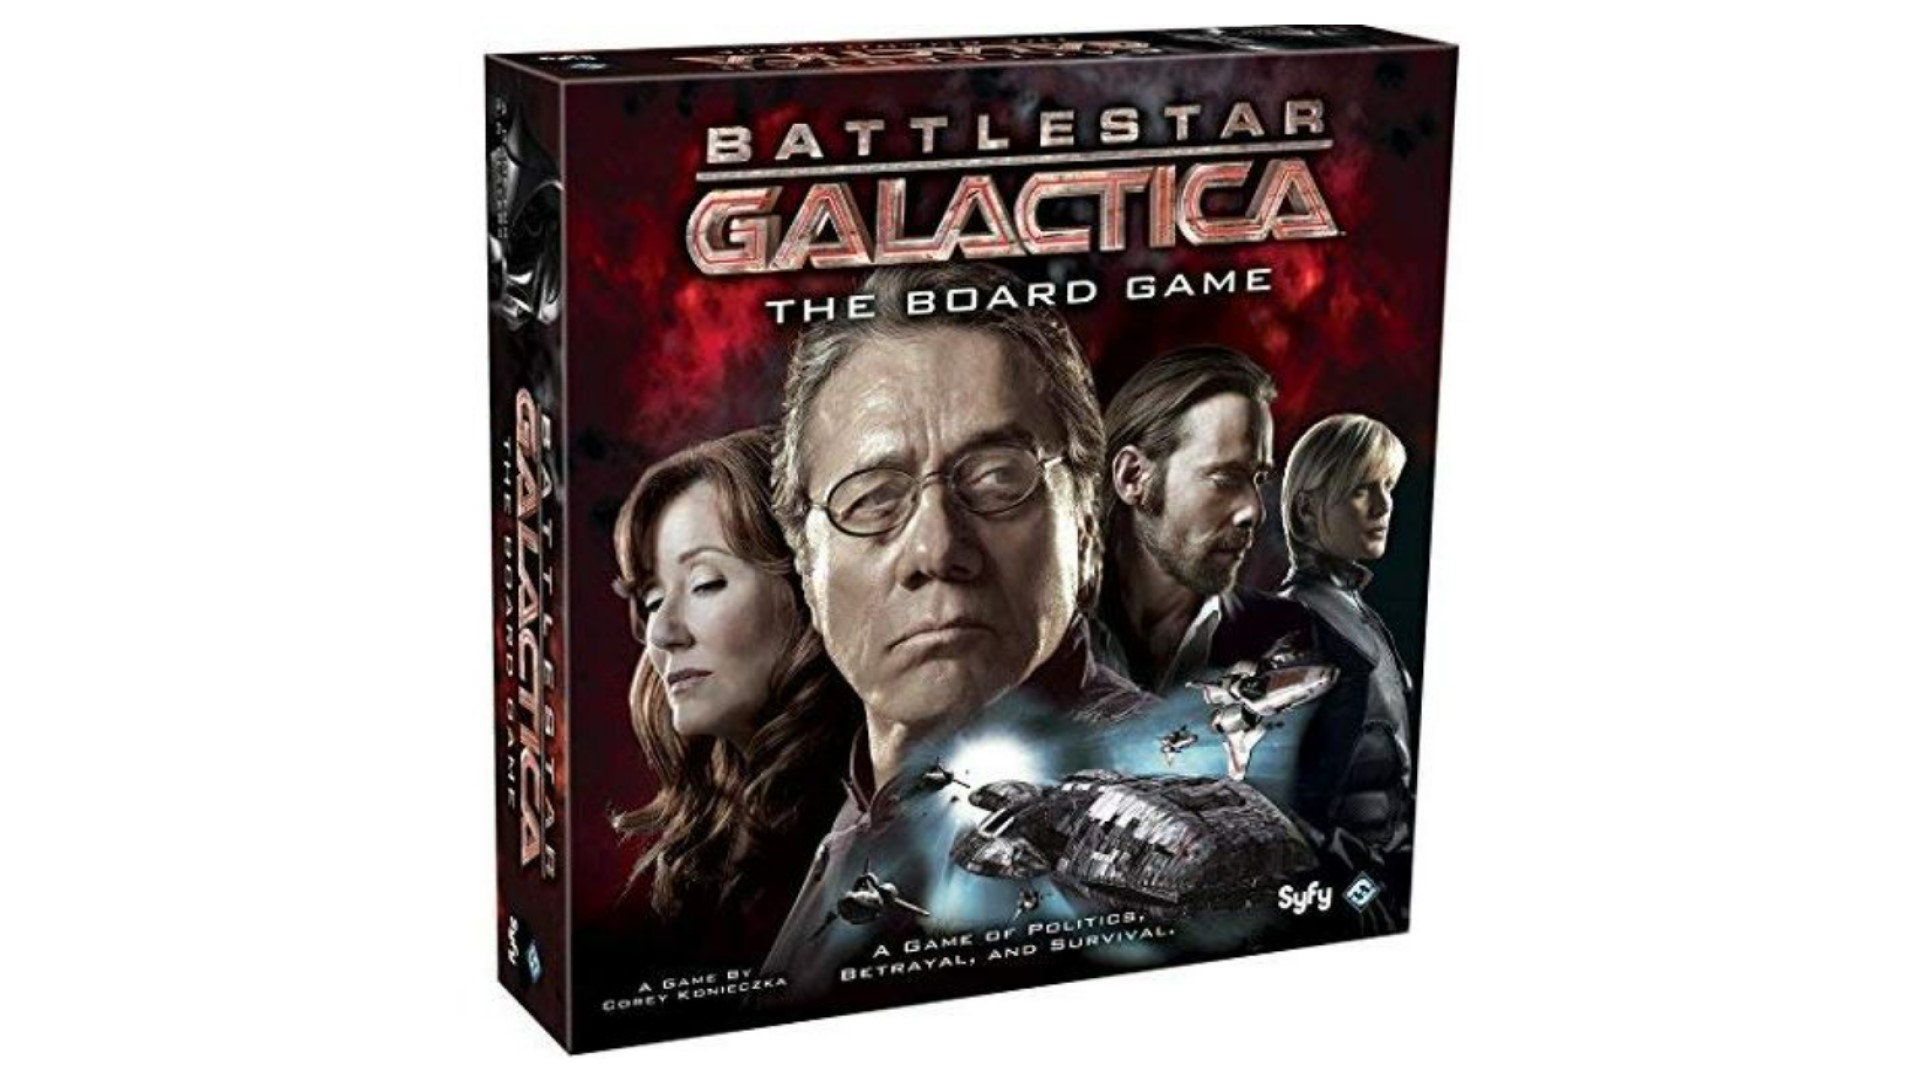 Space board games - Battlestar Galactica board game box